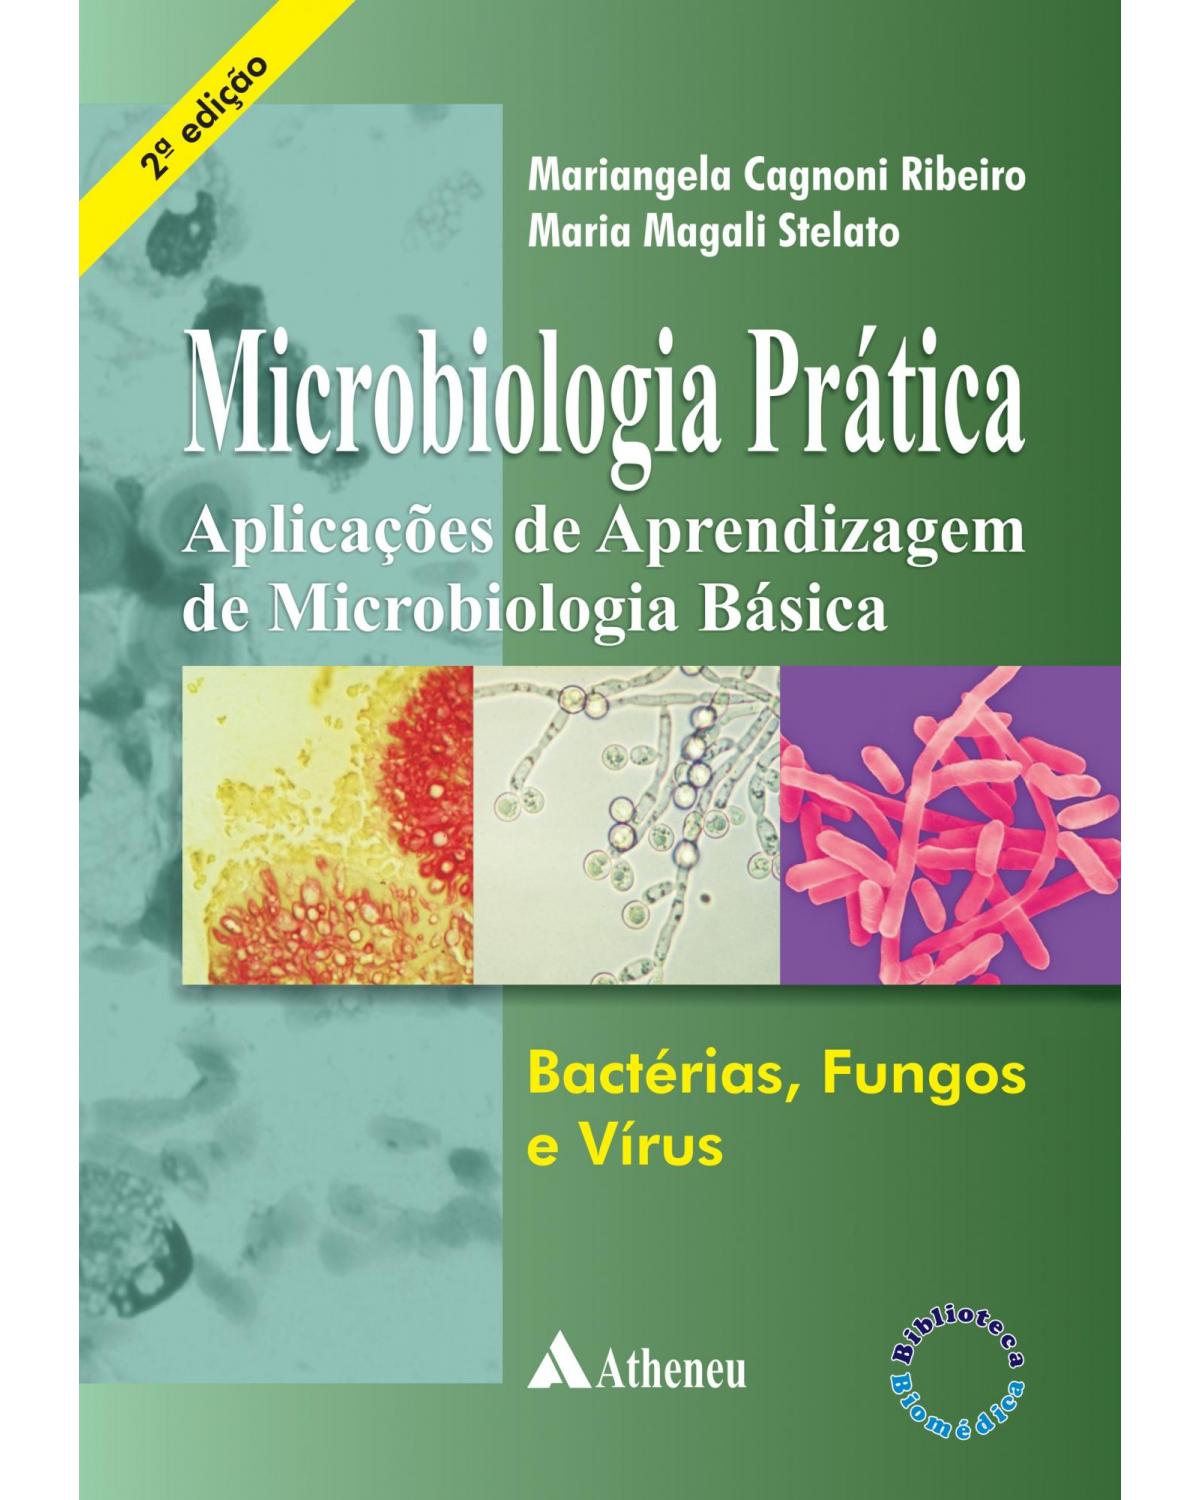 Microbiologia prática - aplicações de aprendizagem de microbiologia básica - Bactérias, fungos e vírus - 2ª Edição | 2011